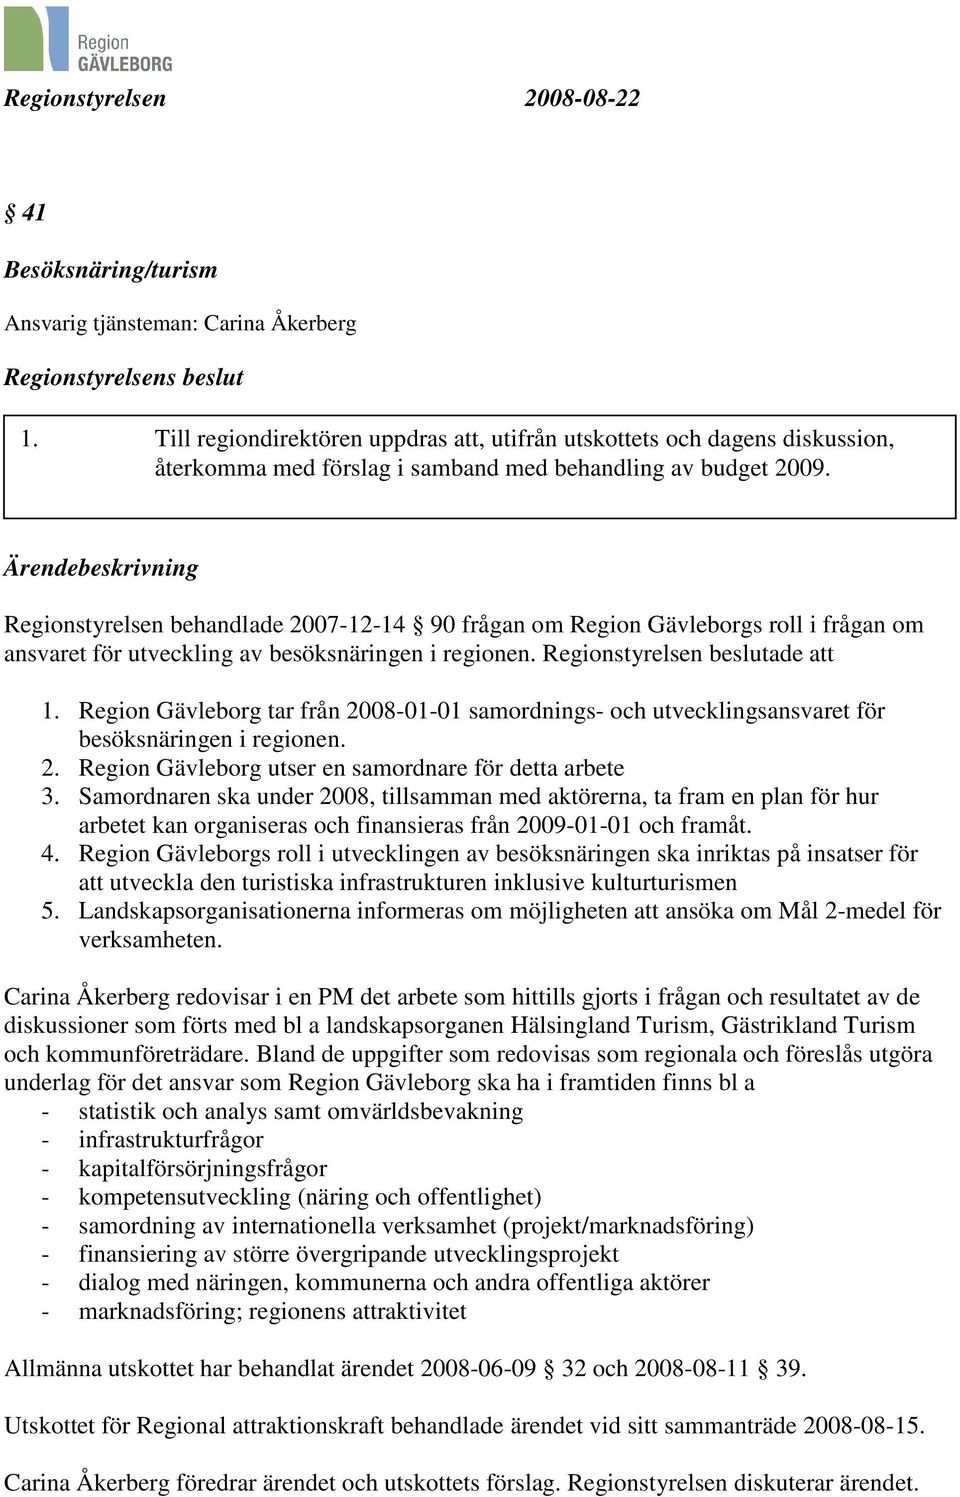 Regionstyrelsen behandlade 2007-12-14 90 frågan om Region Gävleborgs roll i frågan om ansvaret för utveckling av besöksnäringen i regionen. Regionstyrelsen beslutade att 1.